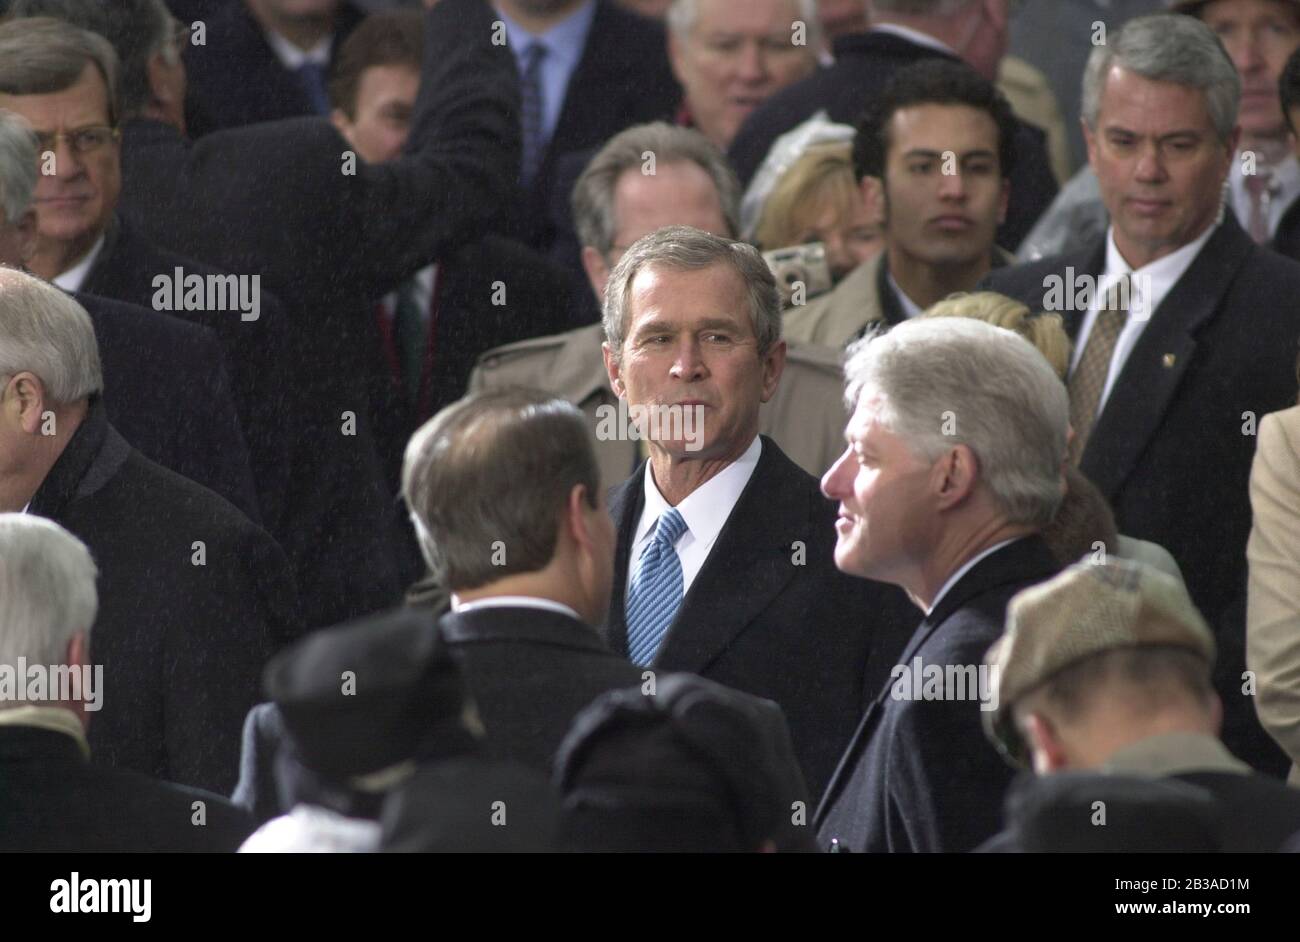 Washington, D.C., Etats-Unis, le 20 2001 janvier : le président entrant George W. Bush attend d'être assermenté comme 43ème président des Etats-Unis lors de la cérémonie inaugurale.Bill Clinton, presse sortante, est sur la droite.©Bob Daemmrich Banque D'Images